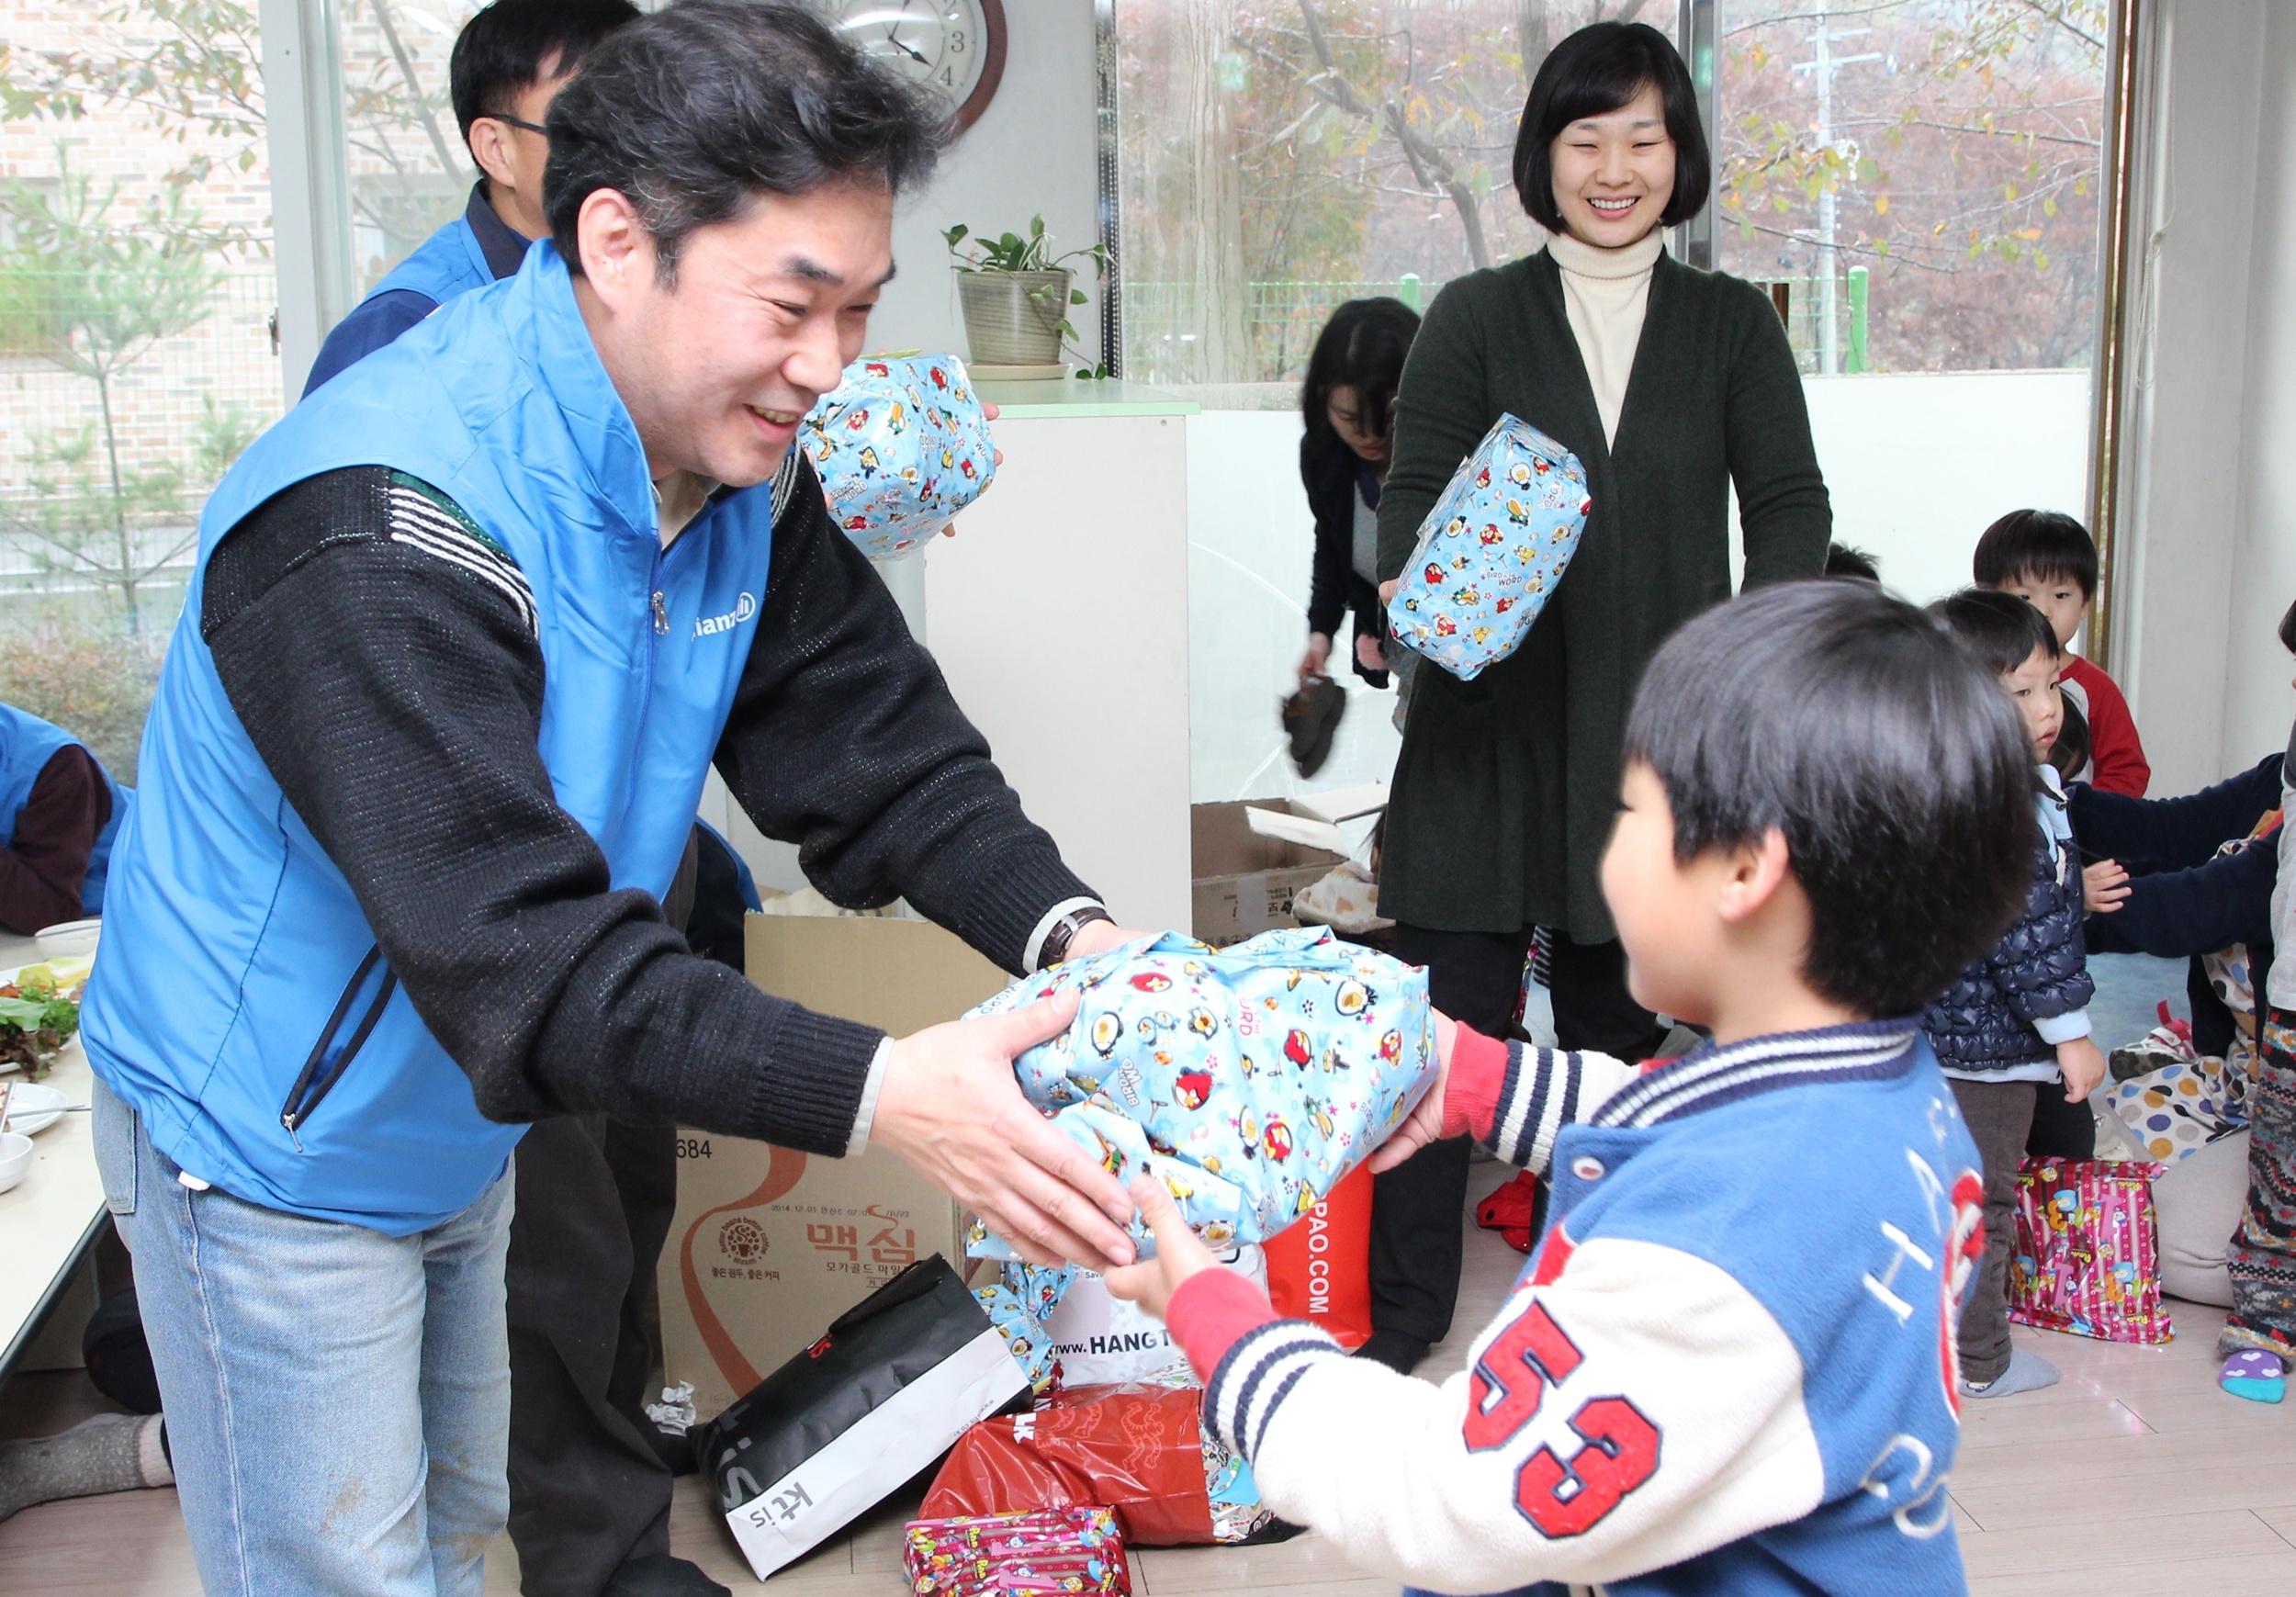 알리안츠생명 직원들이 지온보육원아이들에게 목도리, 장갑 등 미리 준비한 방한물품을 선물하는 모습